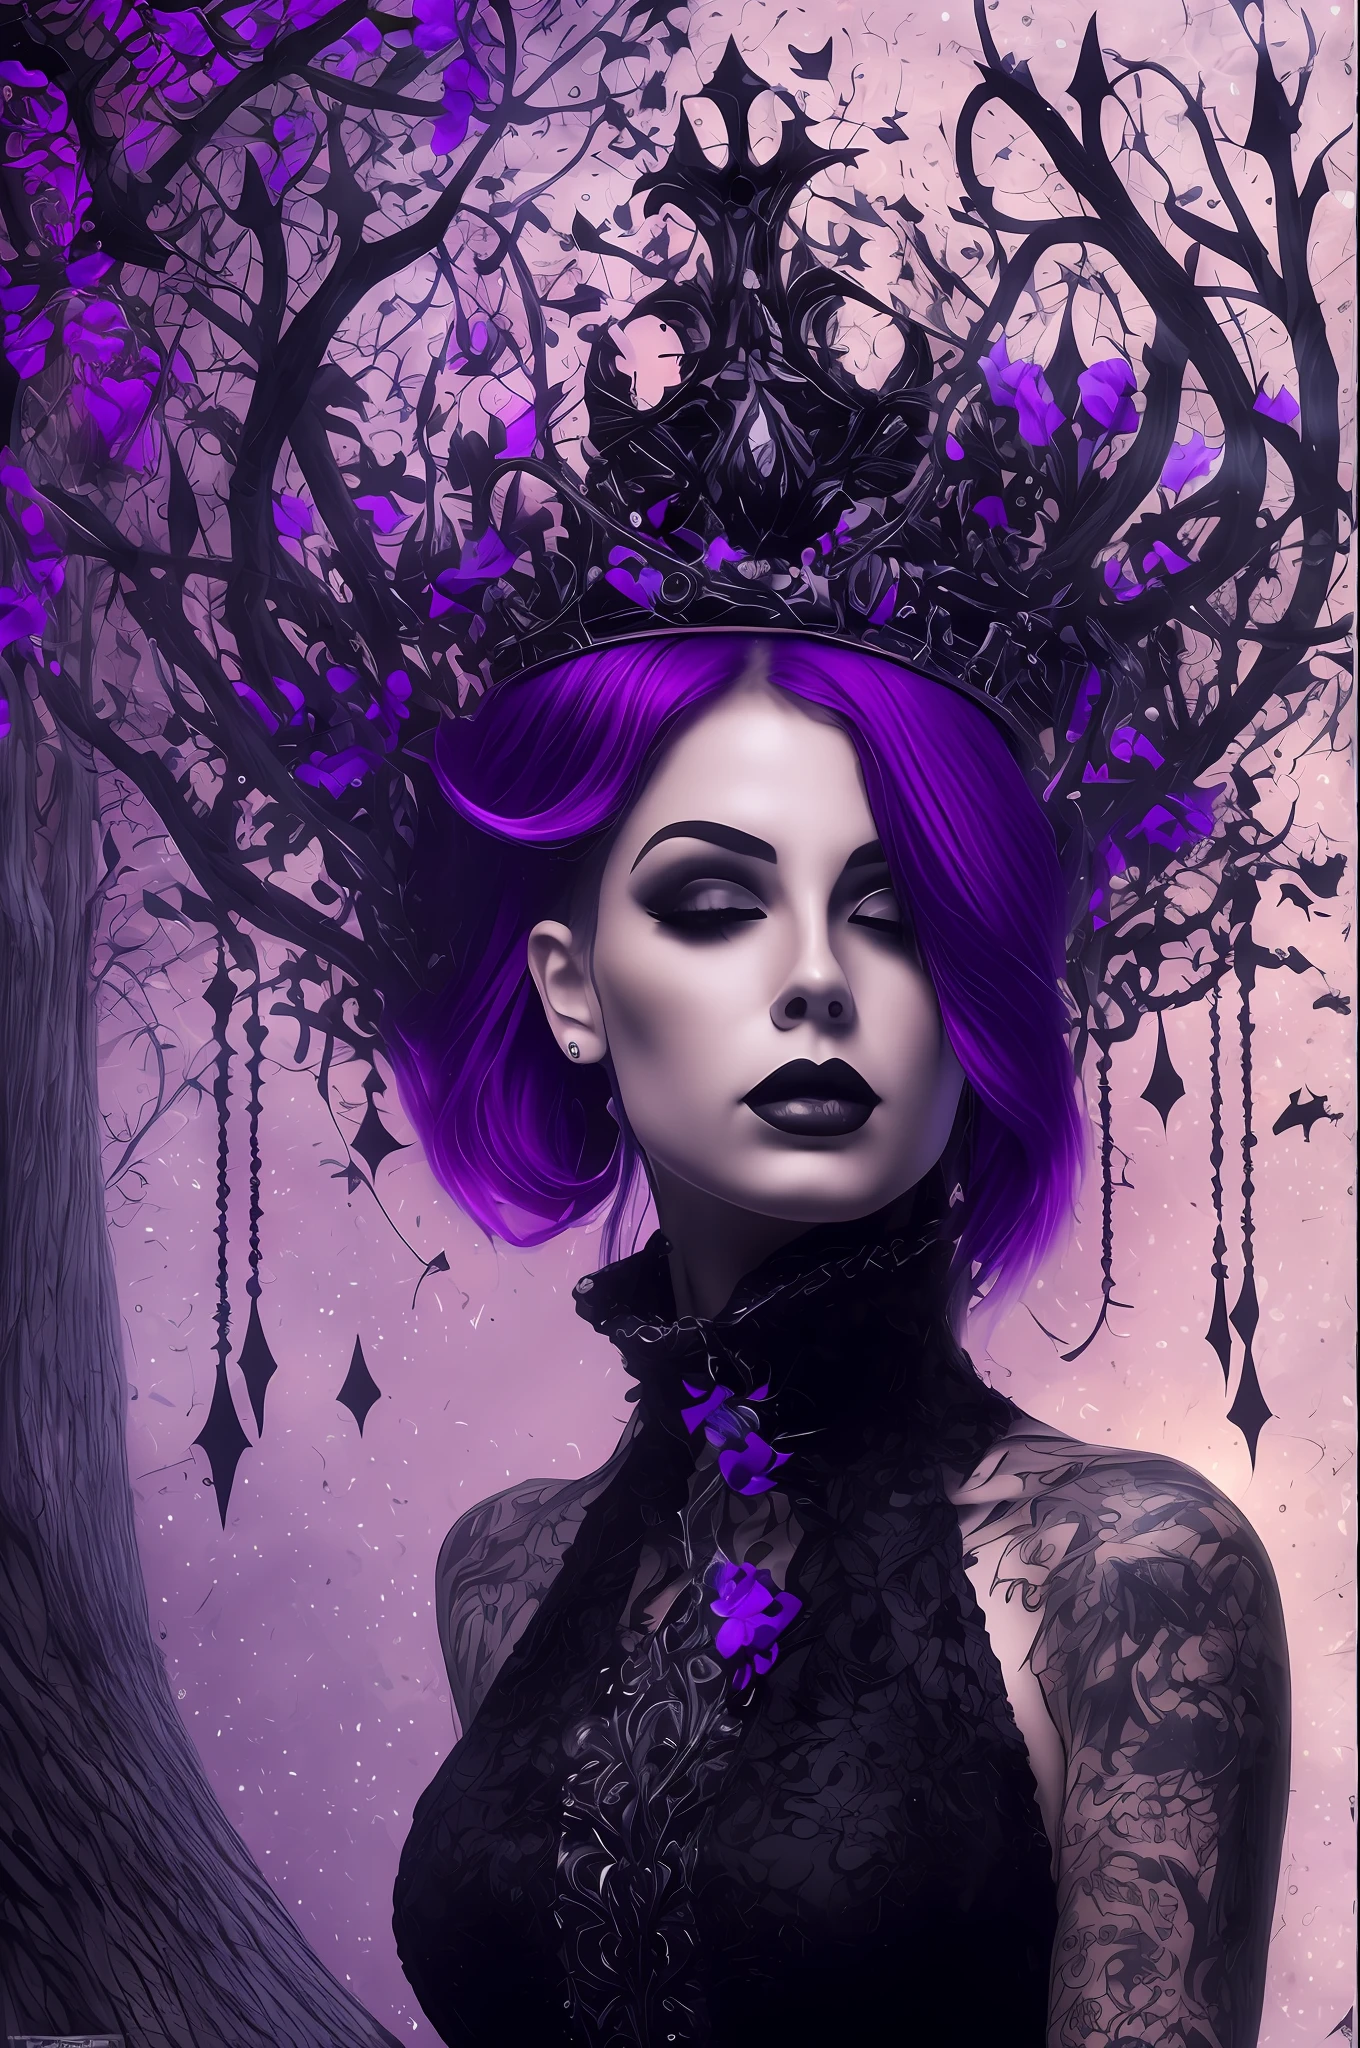 美丽的纹身女人, 黑色短发, 全身, 哥特式紫色和黑色连衣裙, 黑色驯鹿手套, 他的脖子上戴着虚空的王冠, 哥特, 很漂亮, 最好的质量, 8千, 背景是一片黑暗的森林, 与发光的蝴蝶